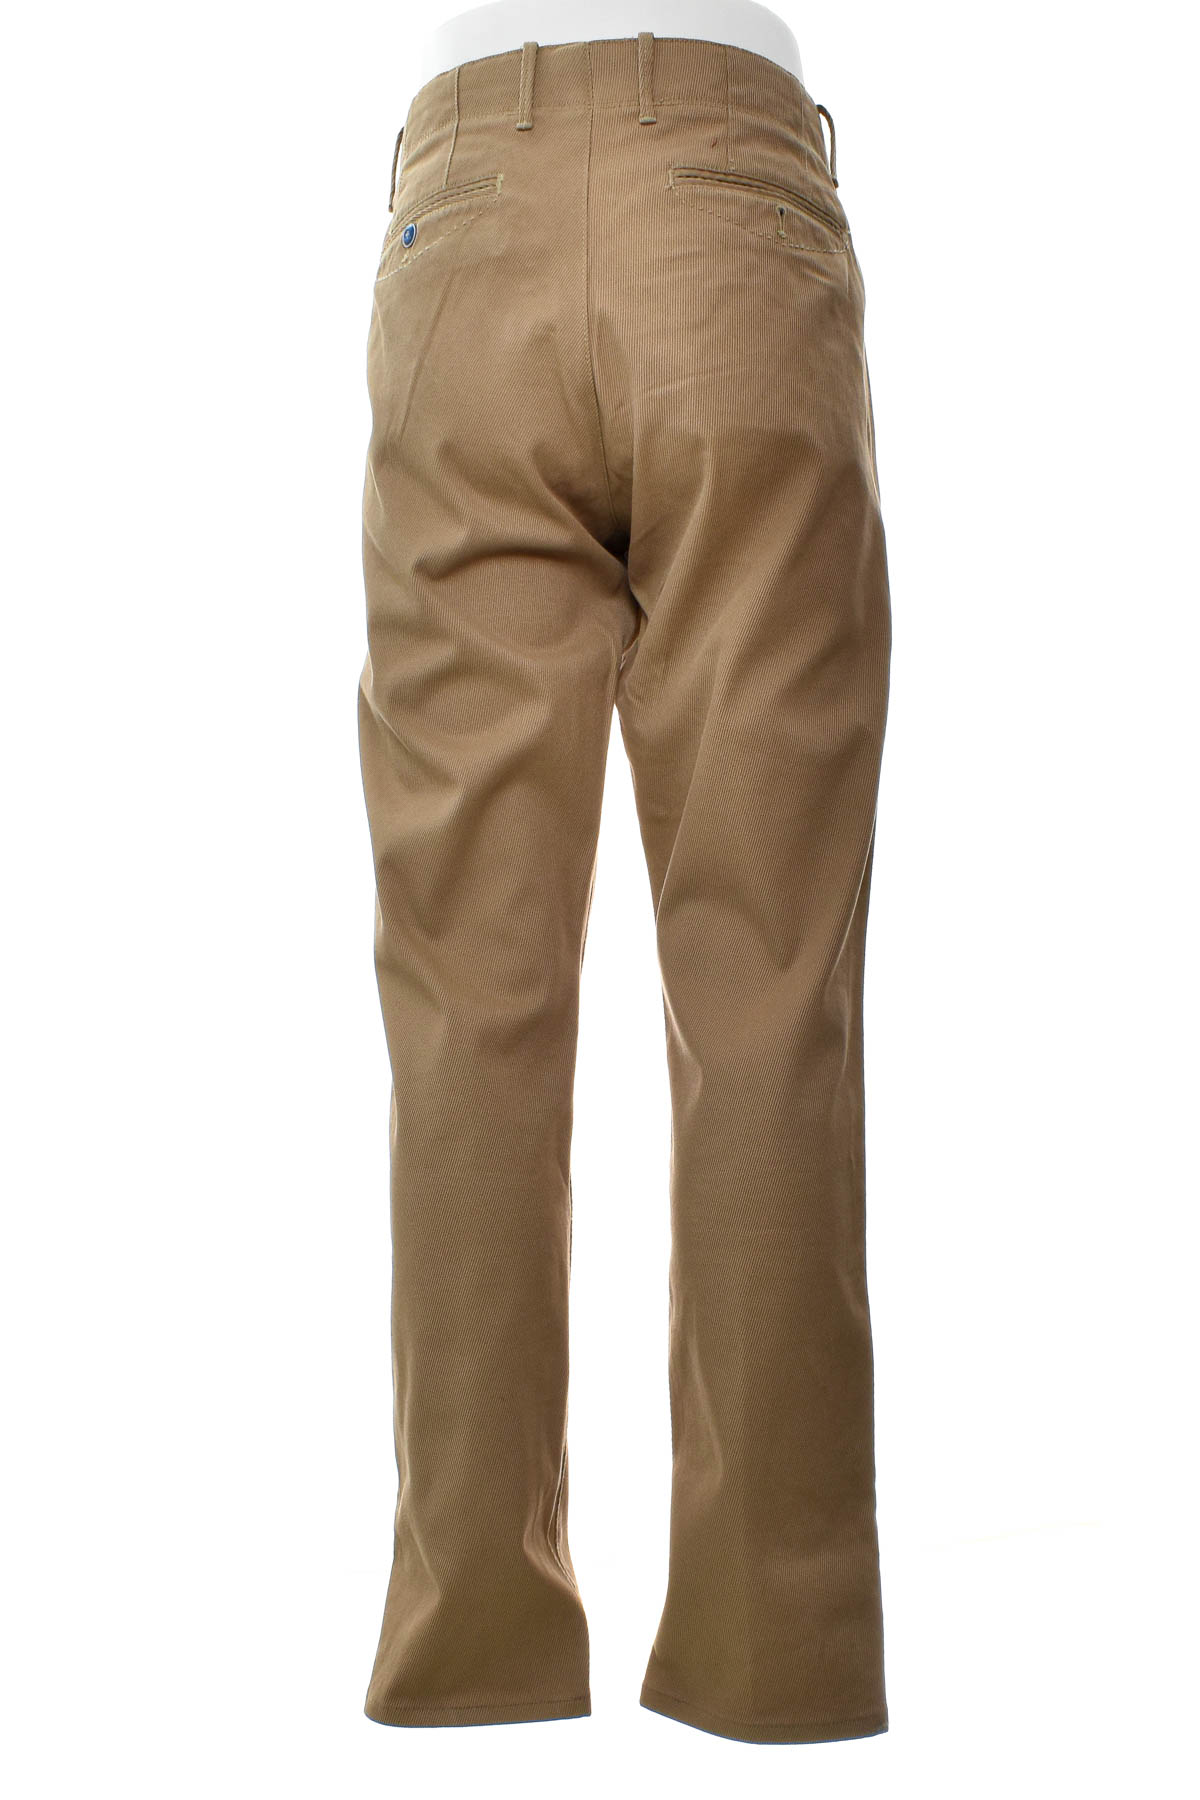 Ανδρικά παντελόνια - Massimo Dutti - 1